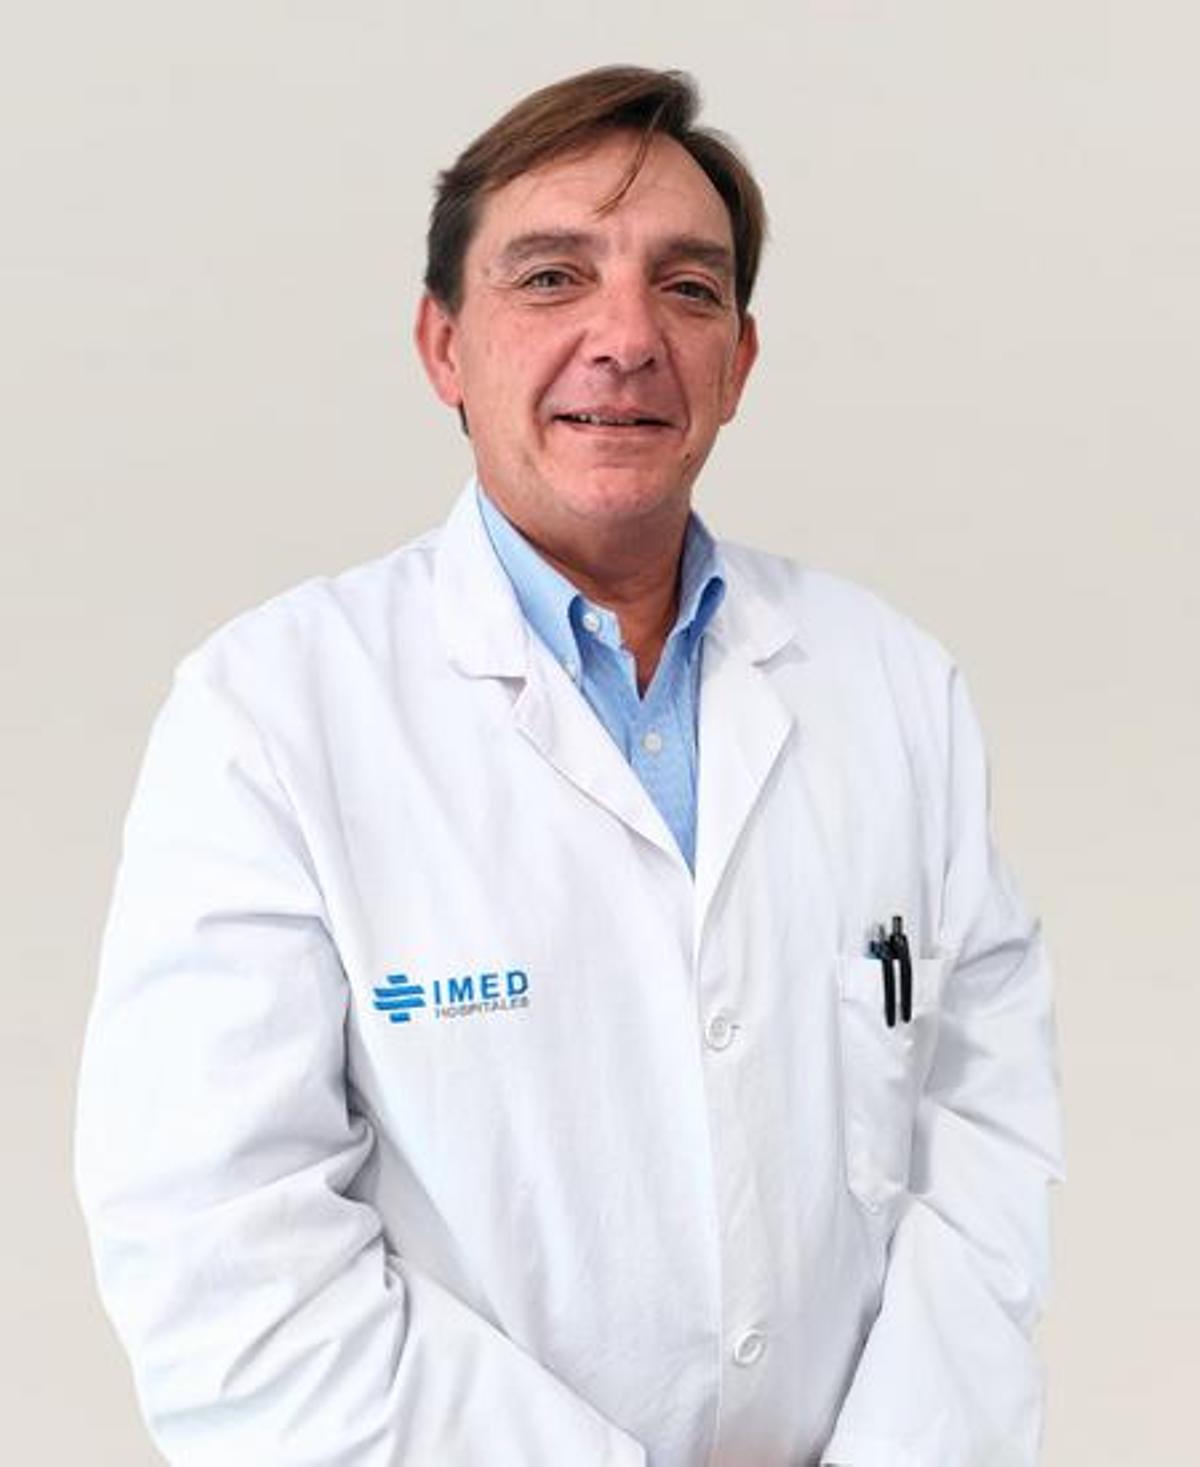 El Dr. Antonio Benedicto, jefe de la Unidad de Urología de IMED Valencia